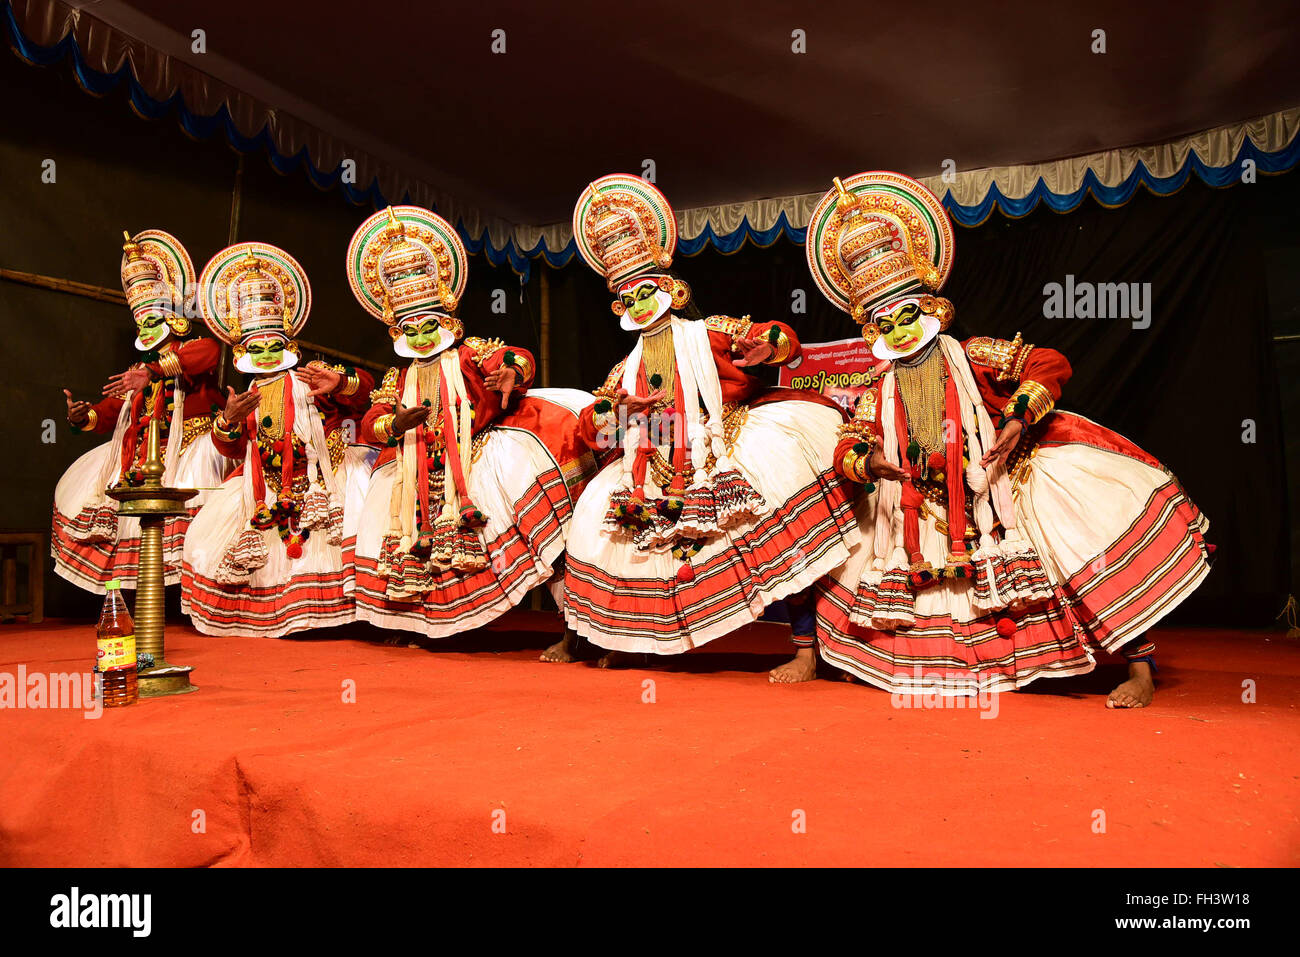 Kathakali est une danse classique indienne stylisé-drama noté pour la belle composition de personnages, des costumes élaborés, detaile Banque D'Images